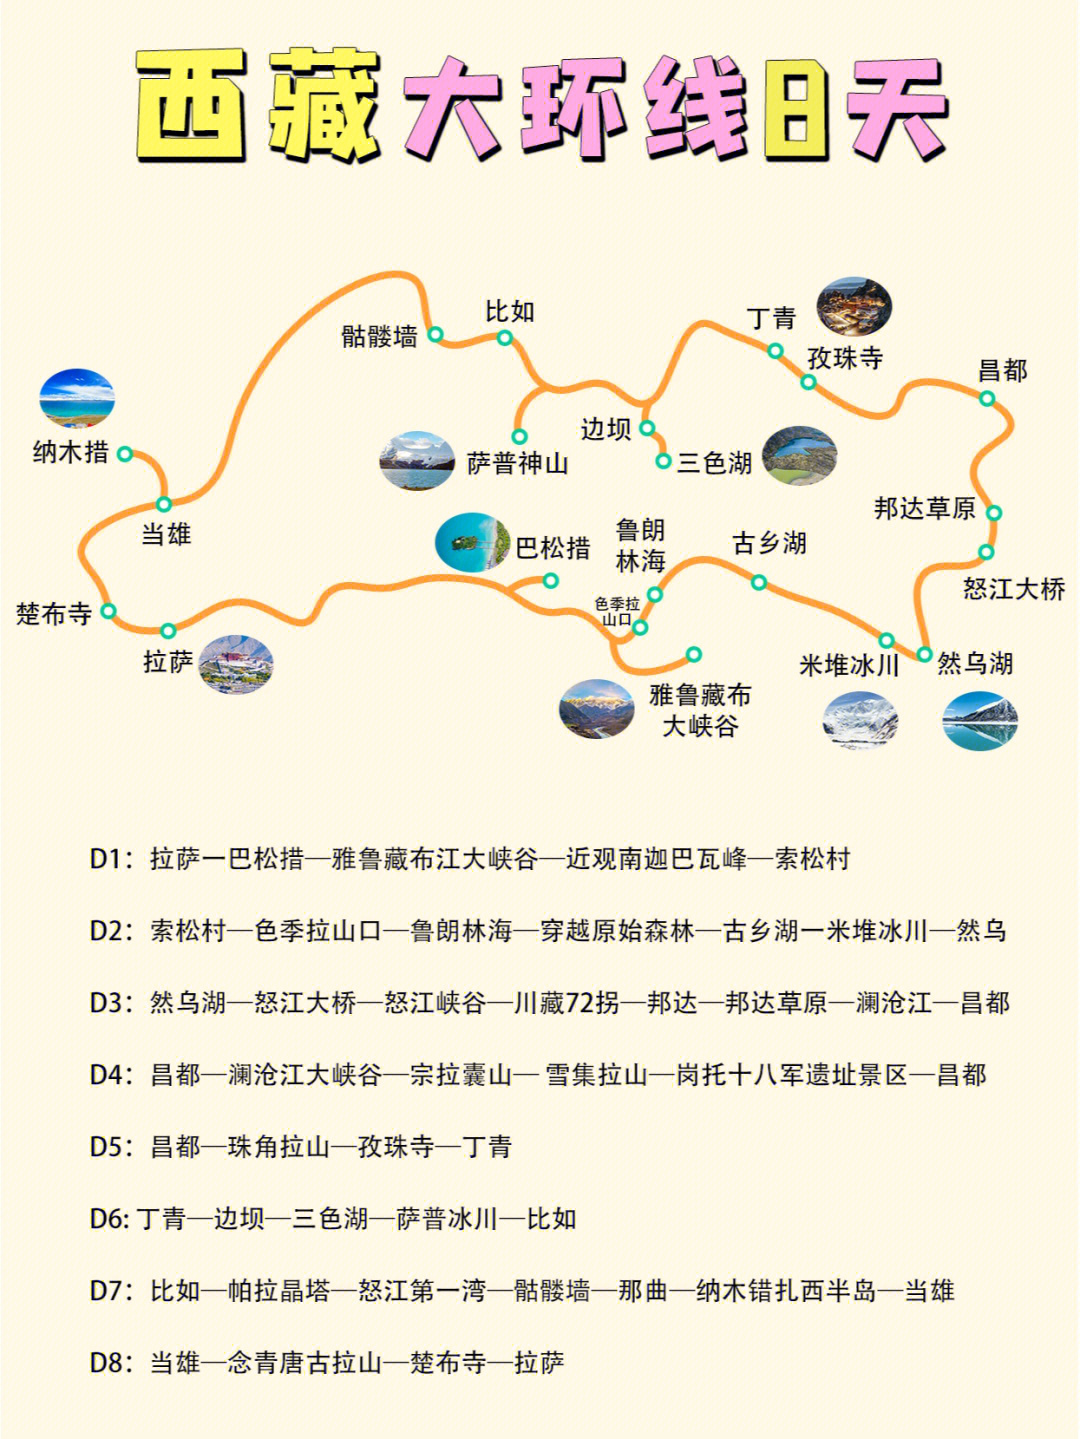 河南317省道全程线路图图片